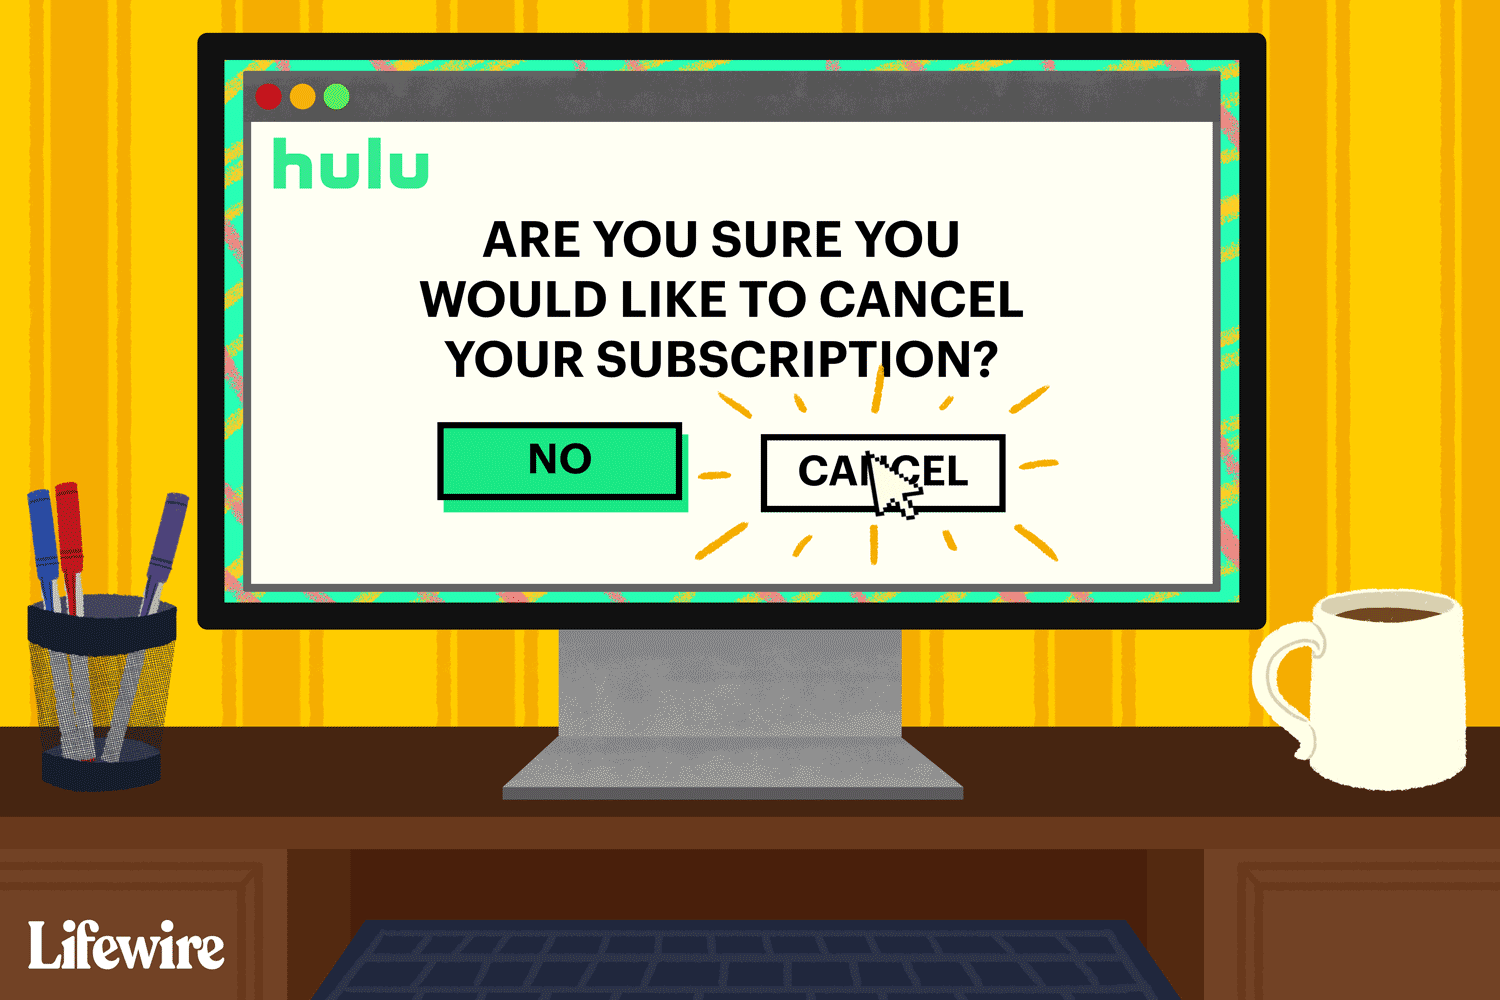 Kurzor myši kliknutím na tlačítko Hulu Zrušit